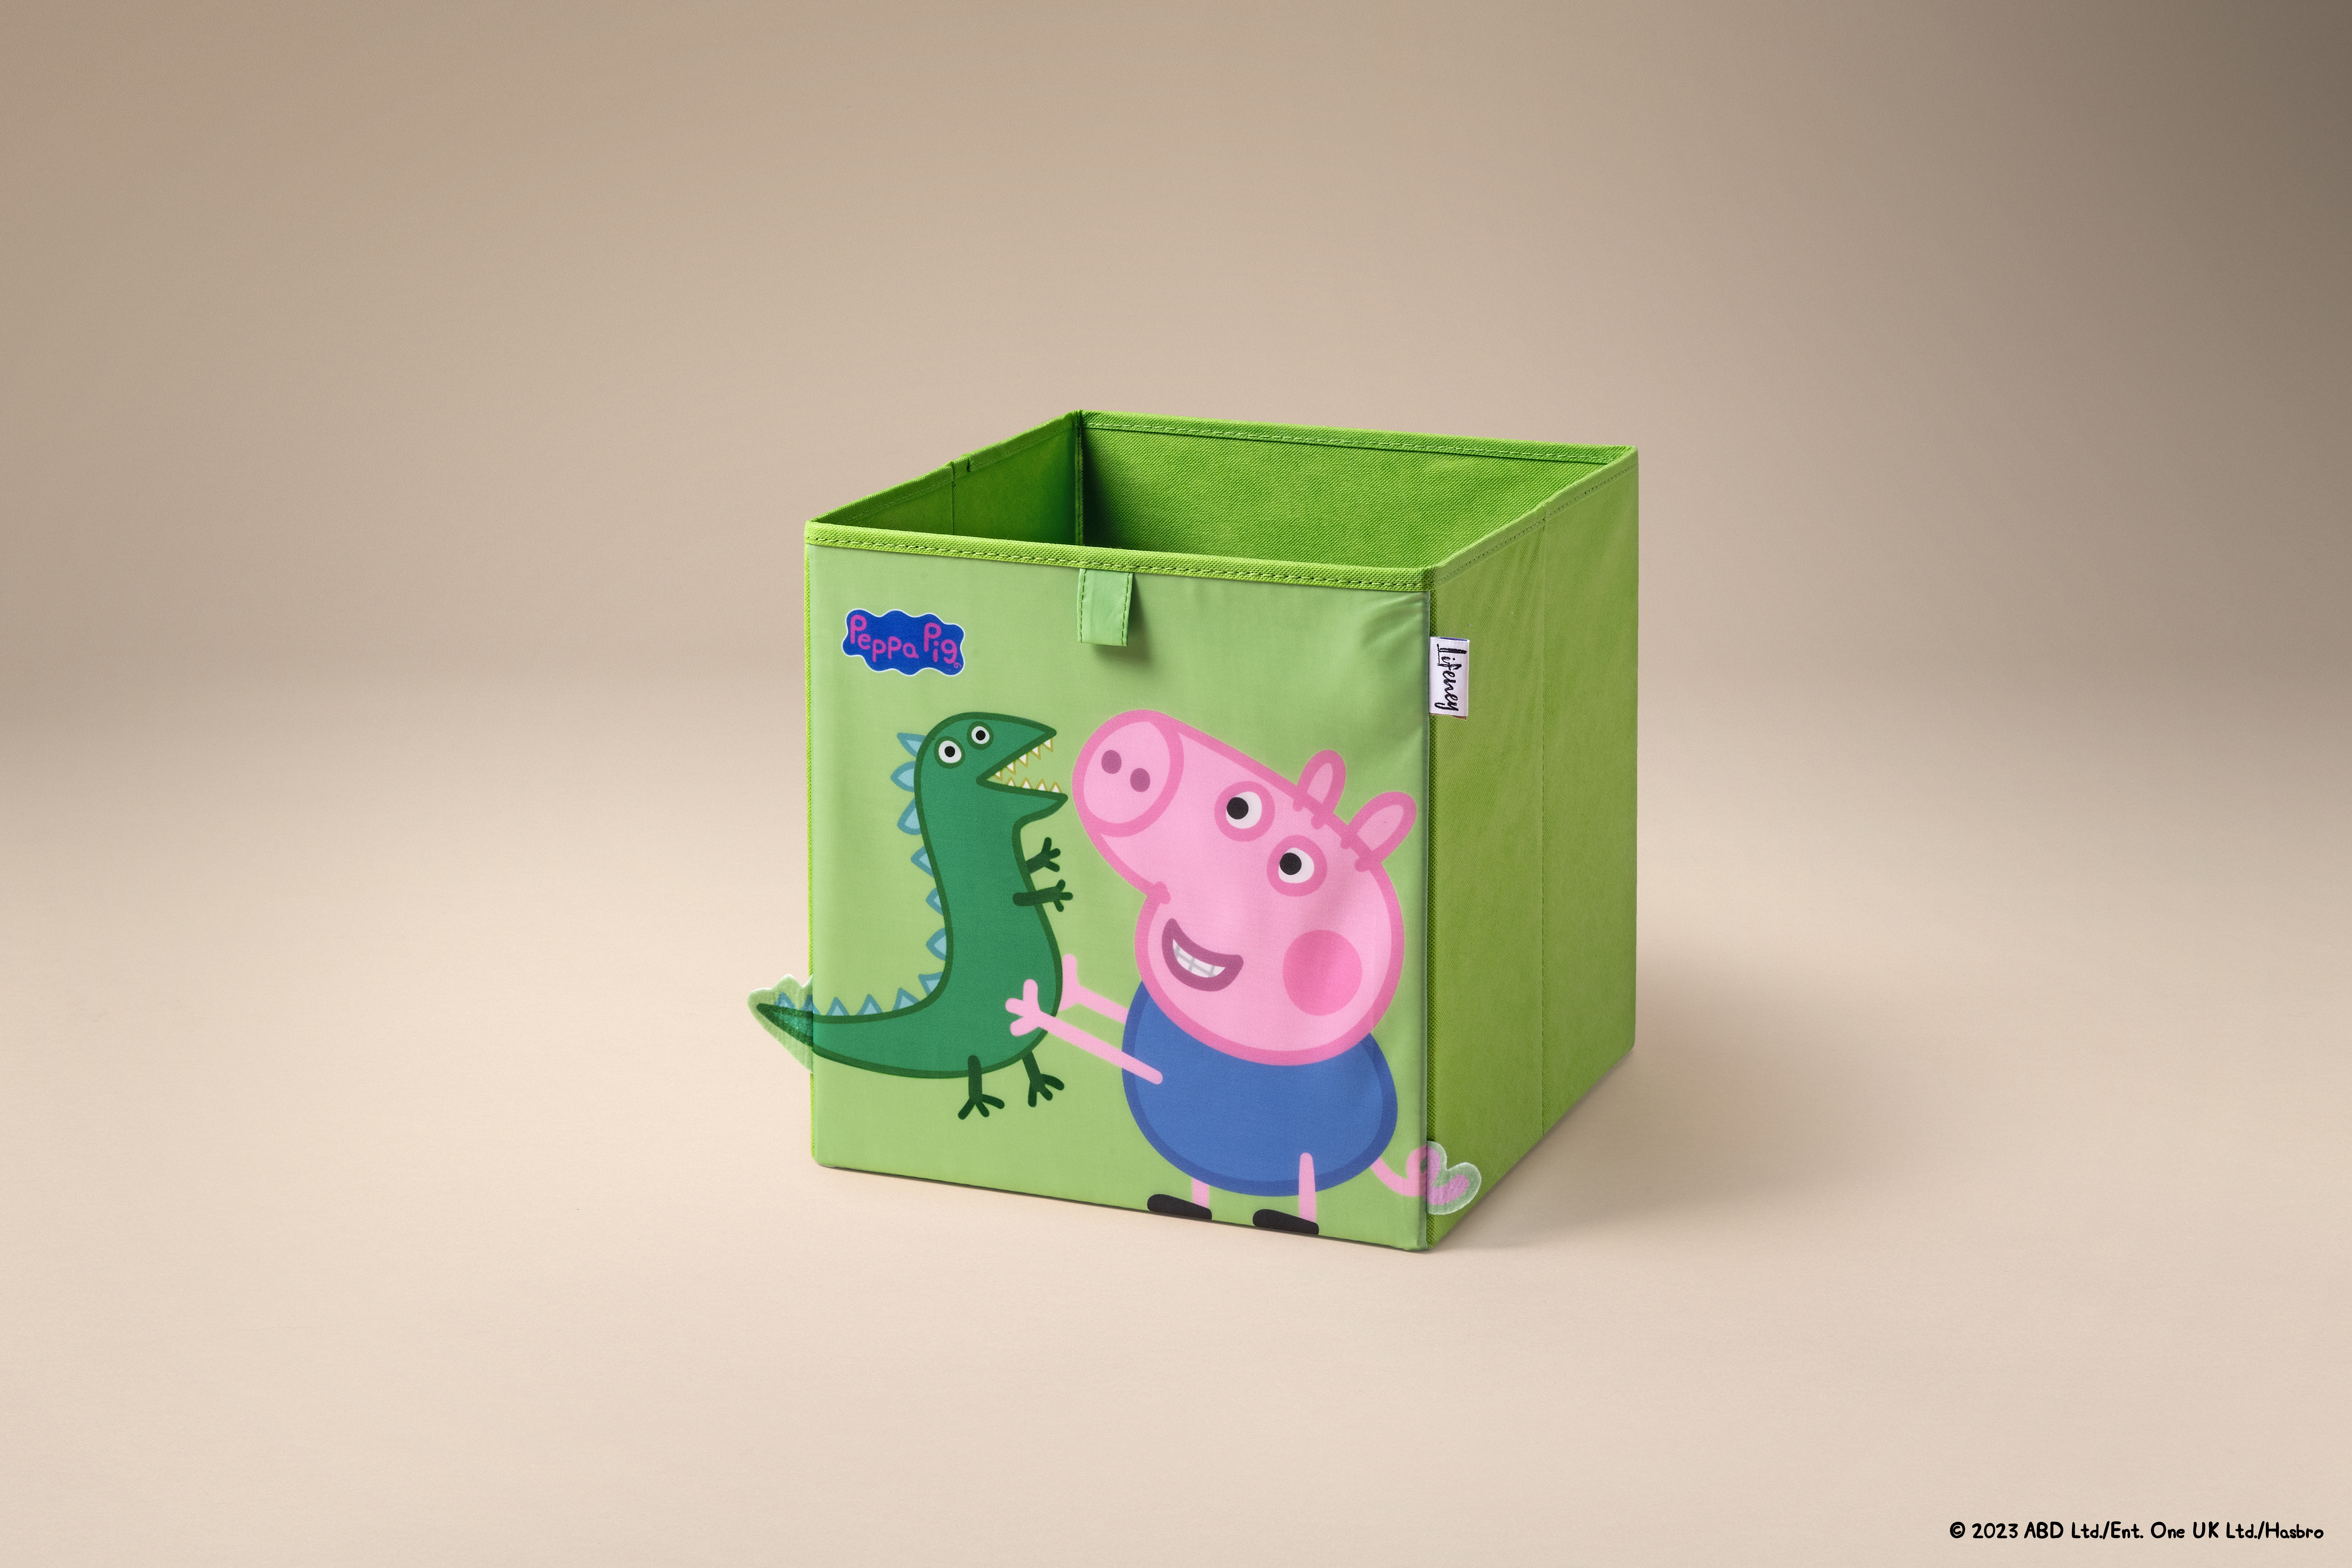 Caja de Almacenamiento Lifeney George y Dino con Detalles en 3D, Diseño de Peppa Pig, Ideal para Organizar Juguetes, 5 Años de Garantía